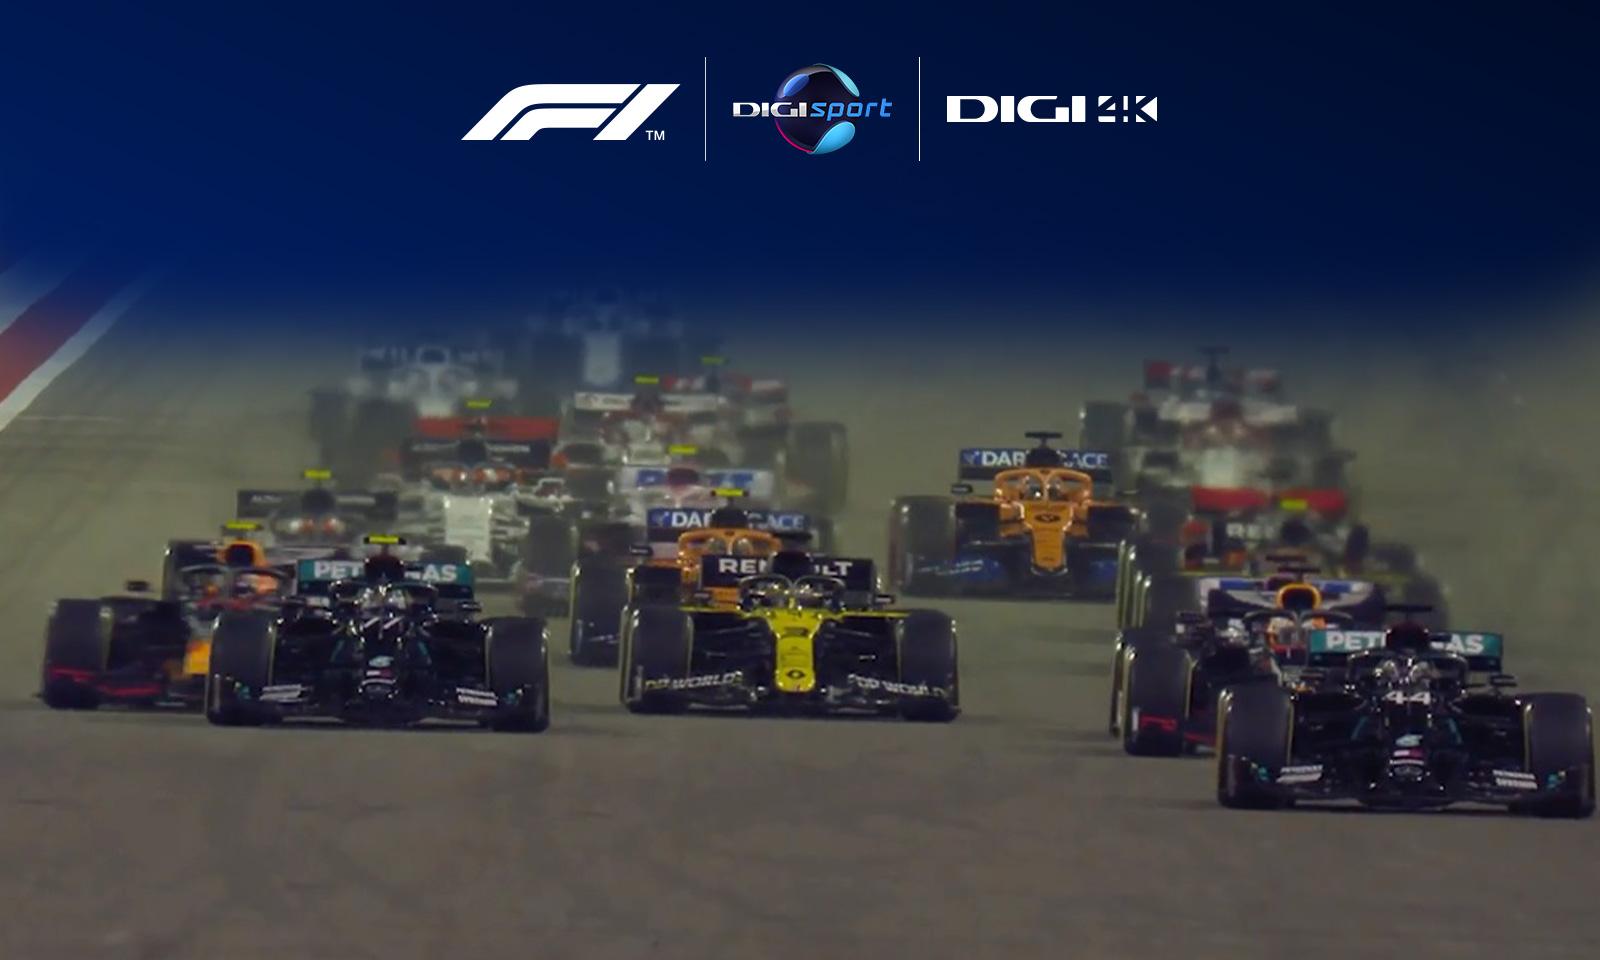 Un nou sezon al Campionatului Mondial de Formula 1 ia startul în direct la Digi Sport și Digi 4K